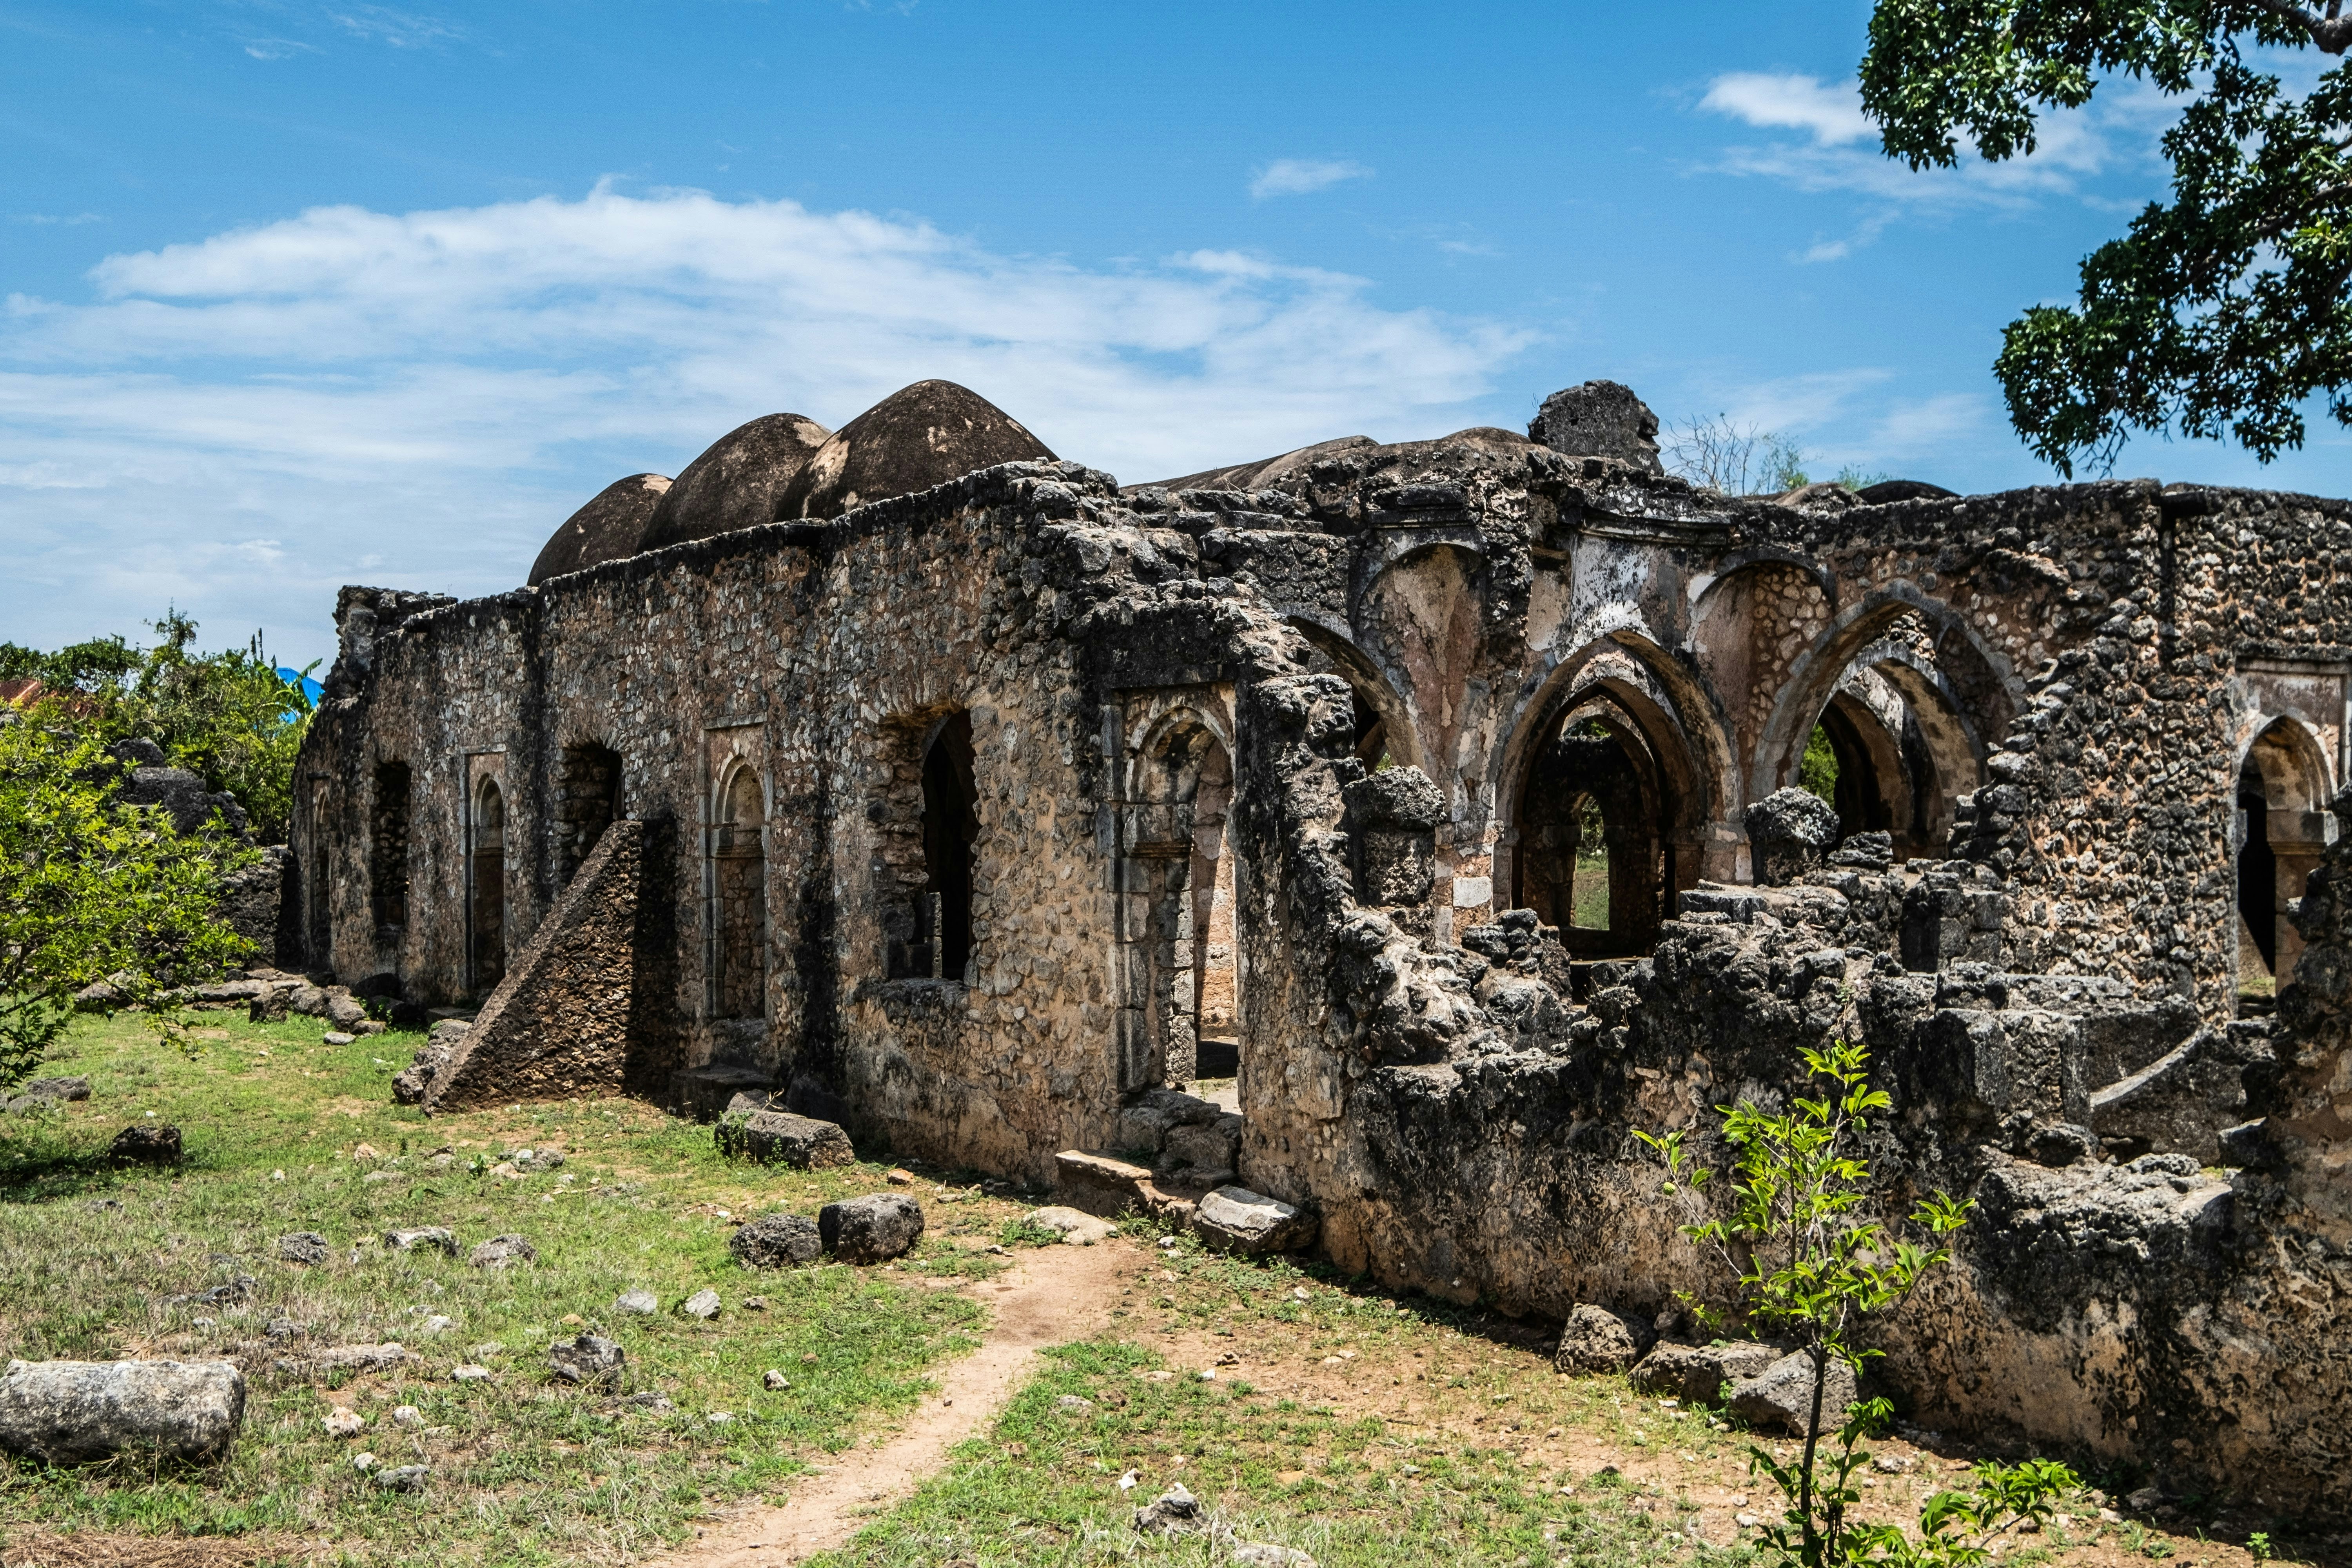 The ruins of Kilwa Kisiwani, Tanzania